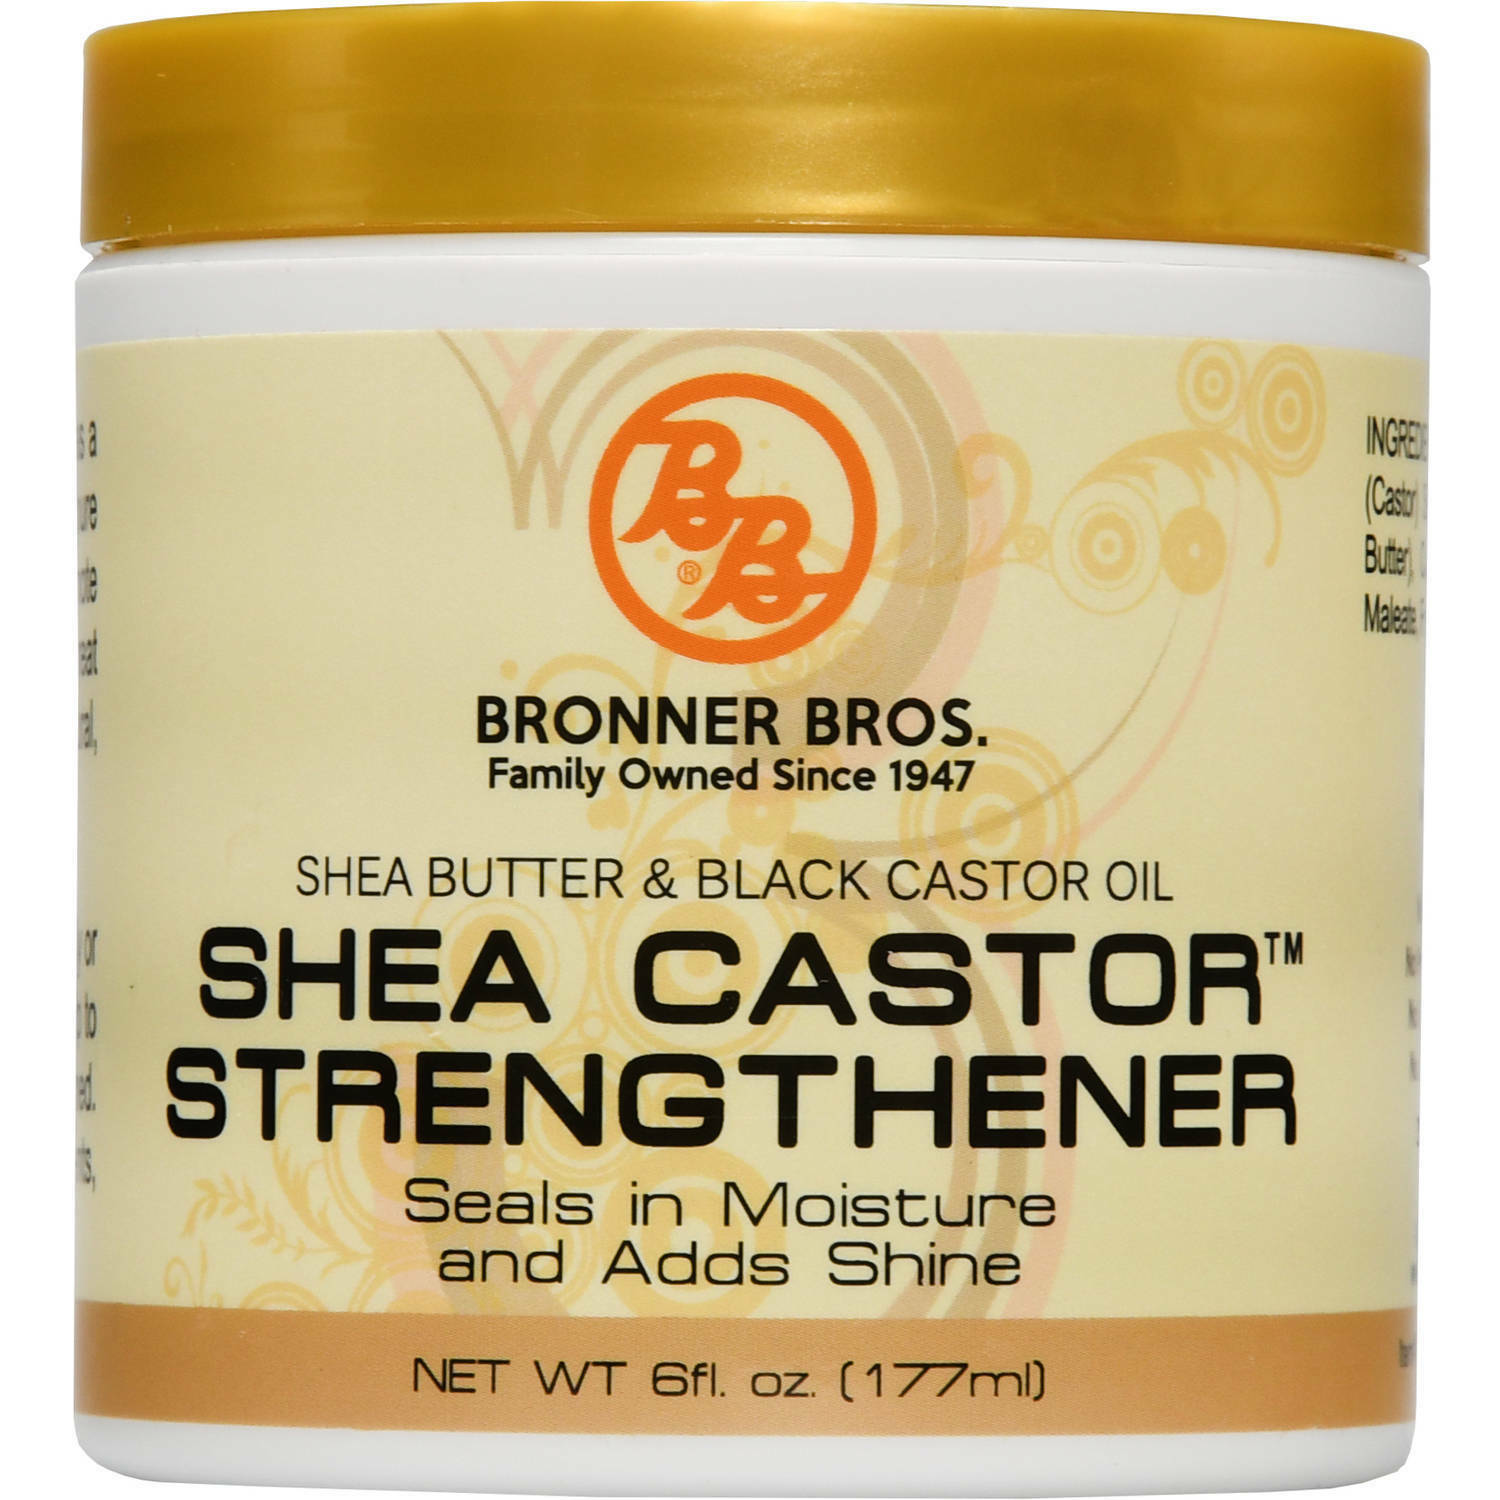 B&B- Shea Castor Strengthener 6oz